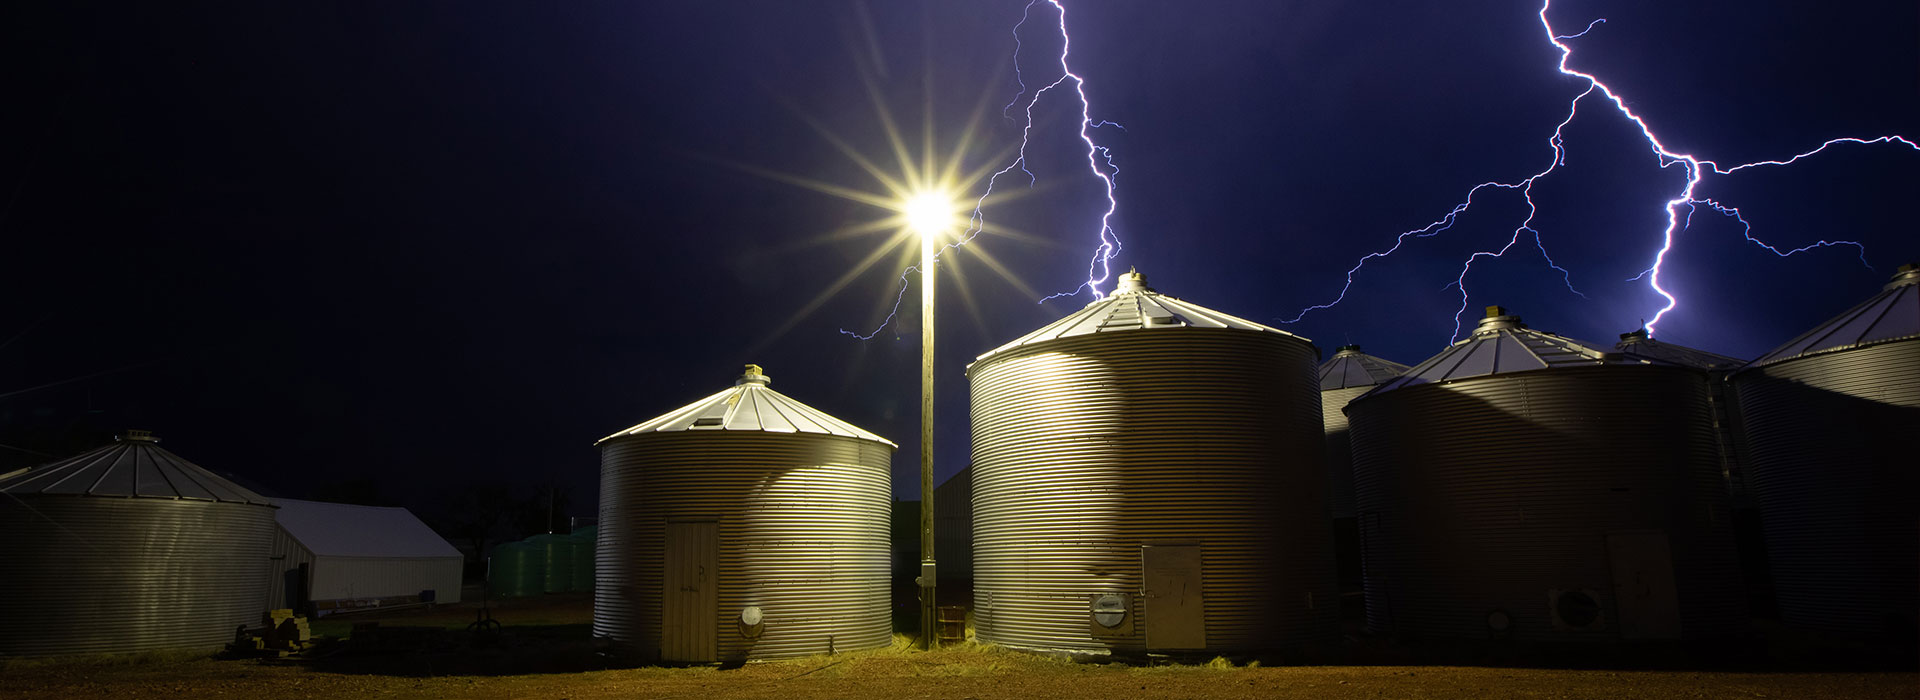 Lightning behind grain bins